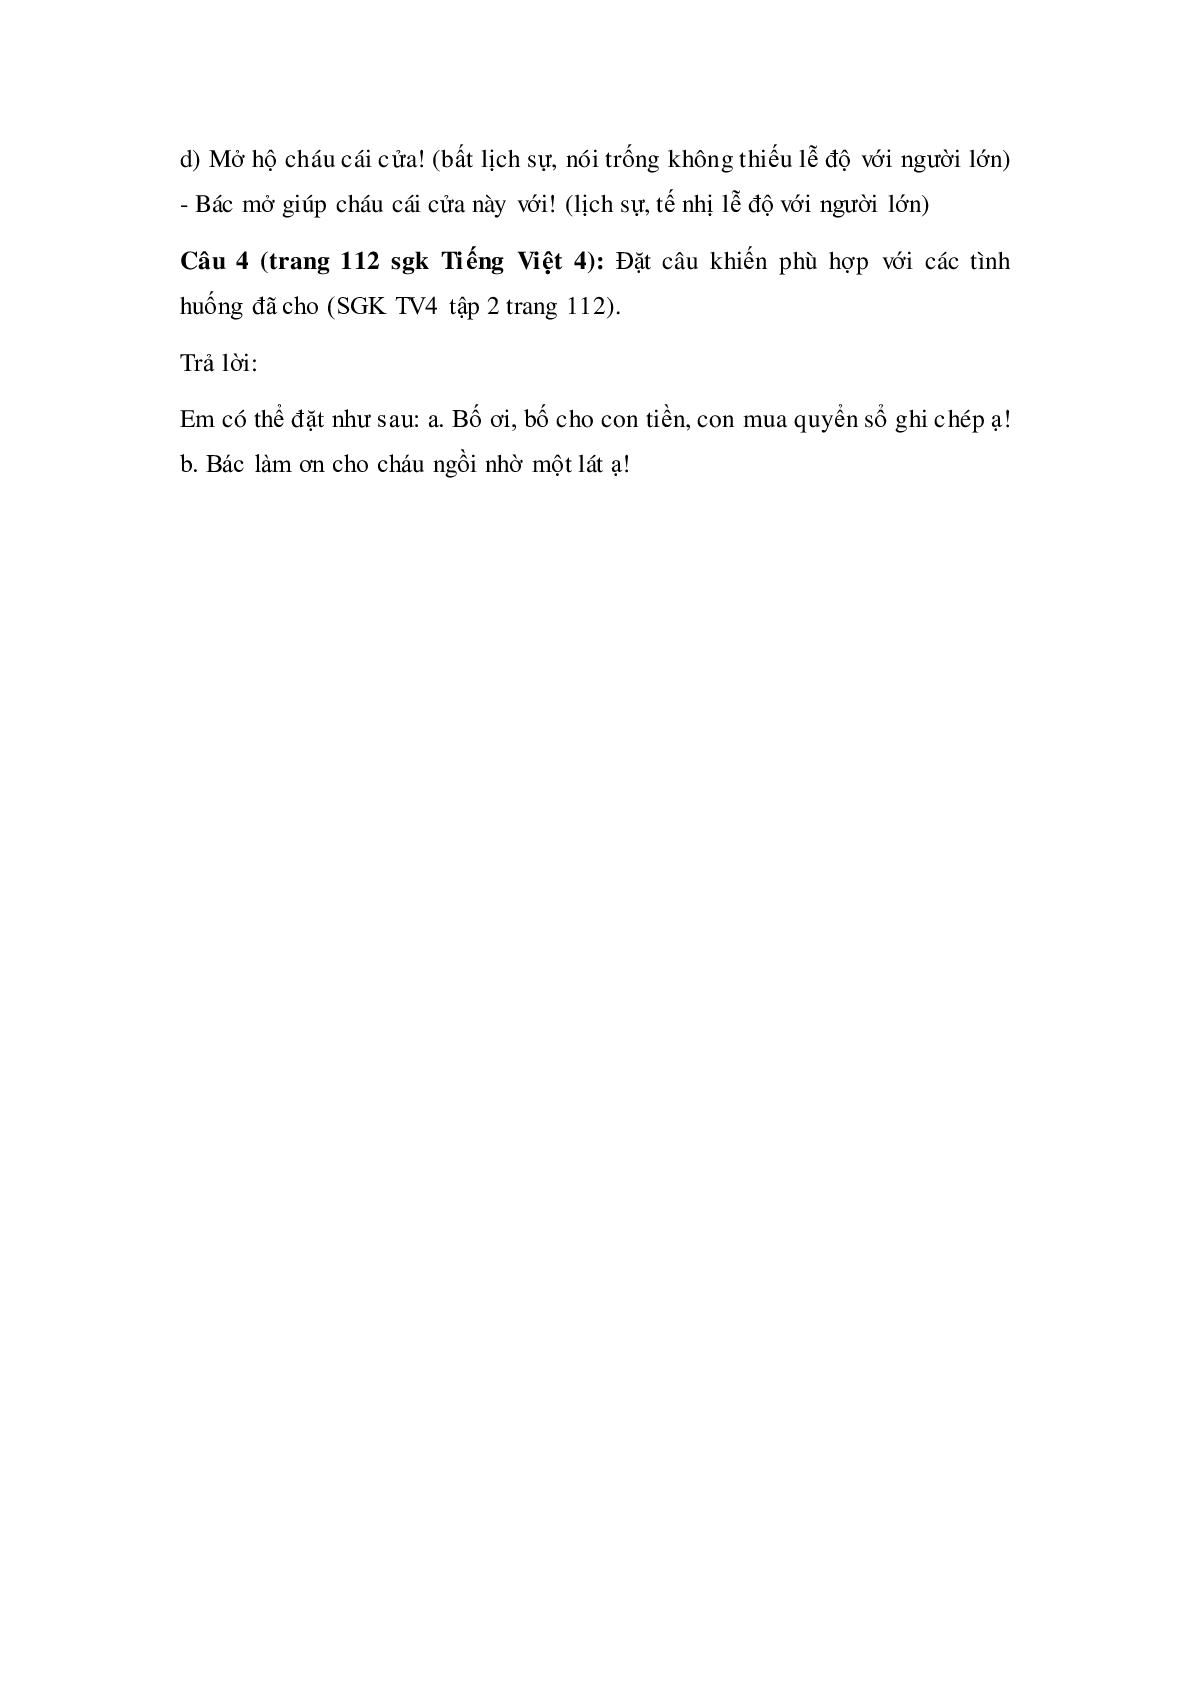 Soạn Tiếng Việt lớp 4: Luyện từ và câu: Giữ phép lịch sự khi bày tỏ yêu cầu đề nghị mới nhất (trang 3)